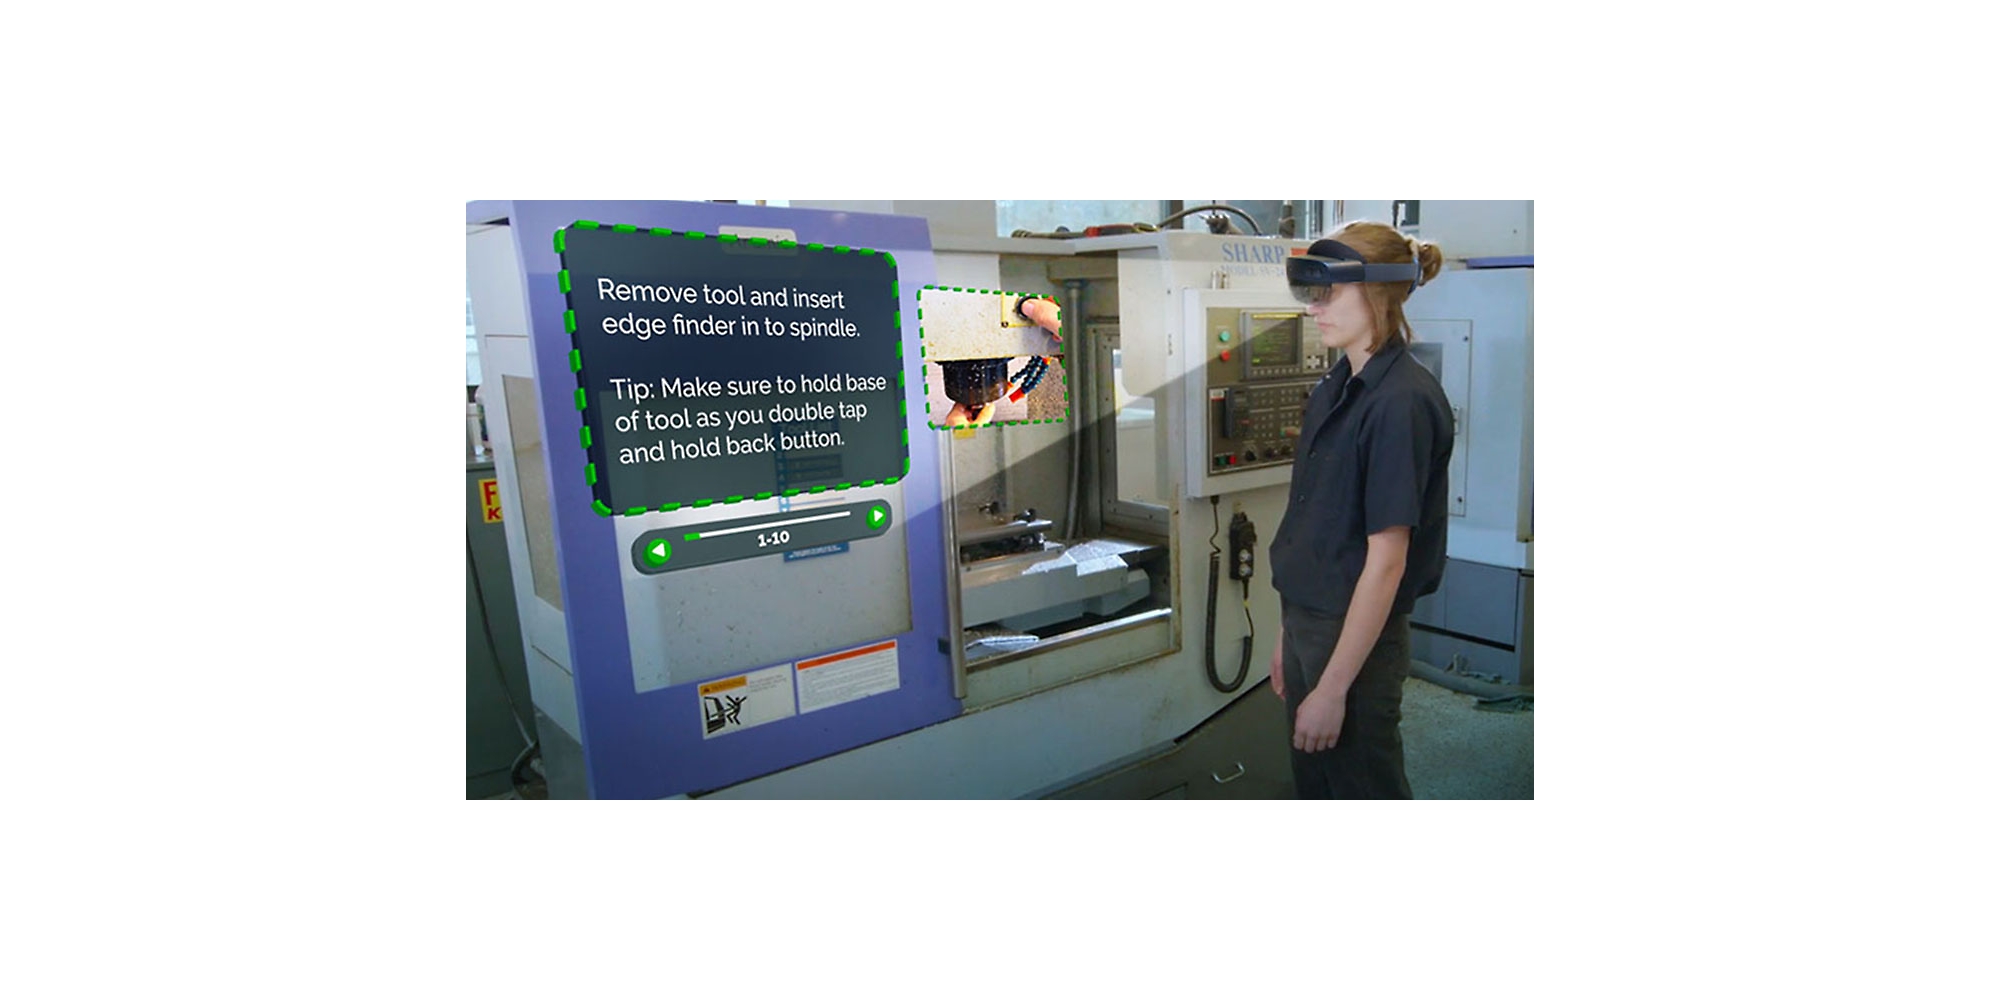 Een persoon die HoloLens 2 draagt en een video bekijkt waarin wordt uitgelegd hoe een specifieke taak kan worden uitgevoerd met bijbehorende instructies in mixed reality.